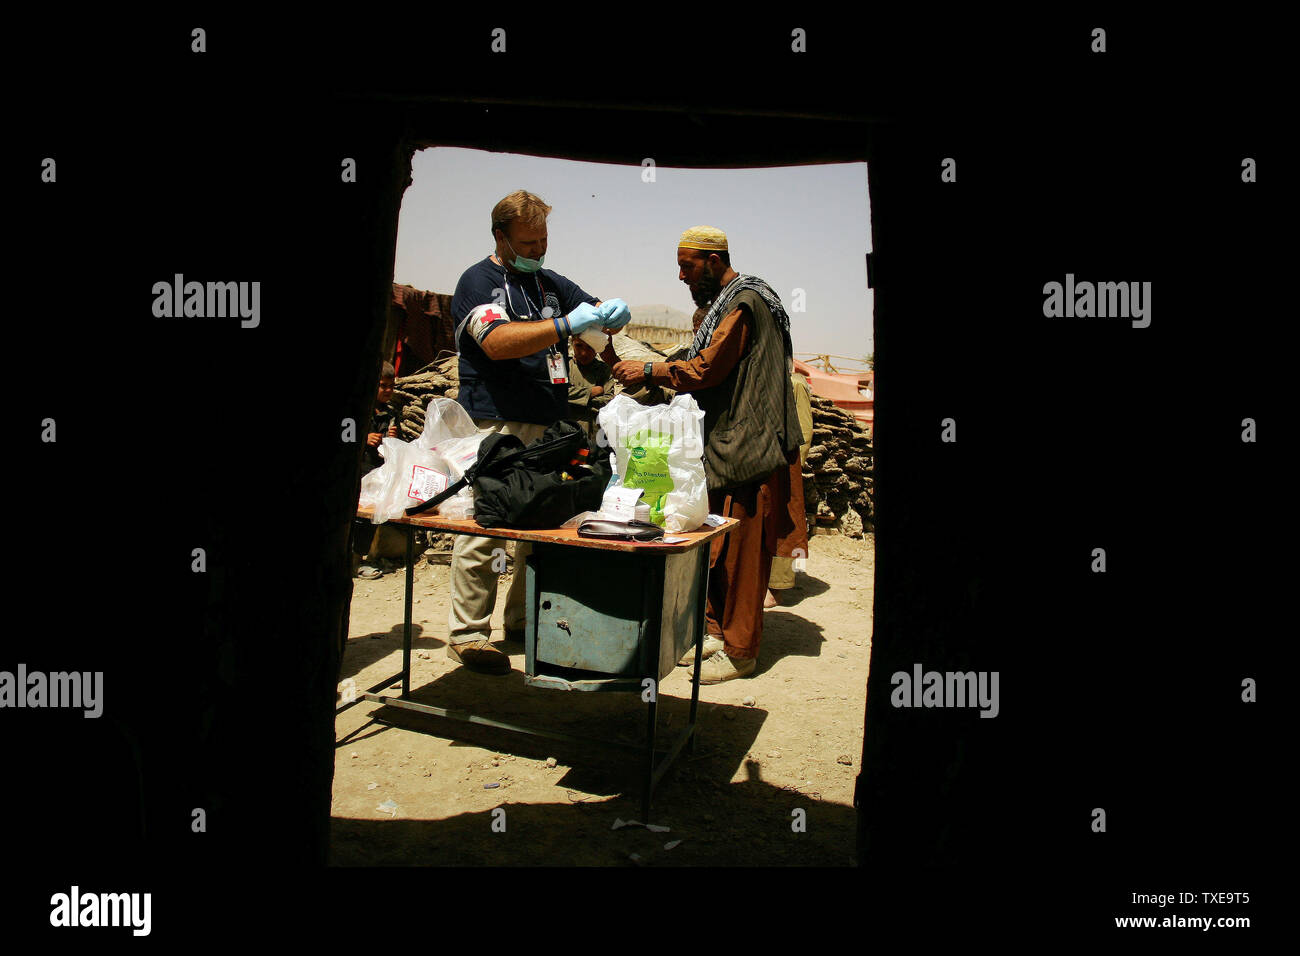 Amerikanische Gerald Scott Feuerstein (L), ein Sanitäter der Freiwilligen Sanitäter Weltweit (VMW) humanitäre Hilfe team, Schecks Hände eines Jungen in einer intern Vertriebenen (IDPs) Camp in Kabul, Afghanistan am 28. August 2009. UPI/Mohammad Kheirkhah Stockfoto